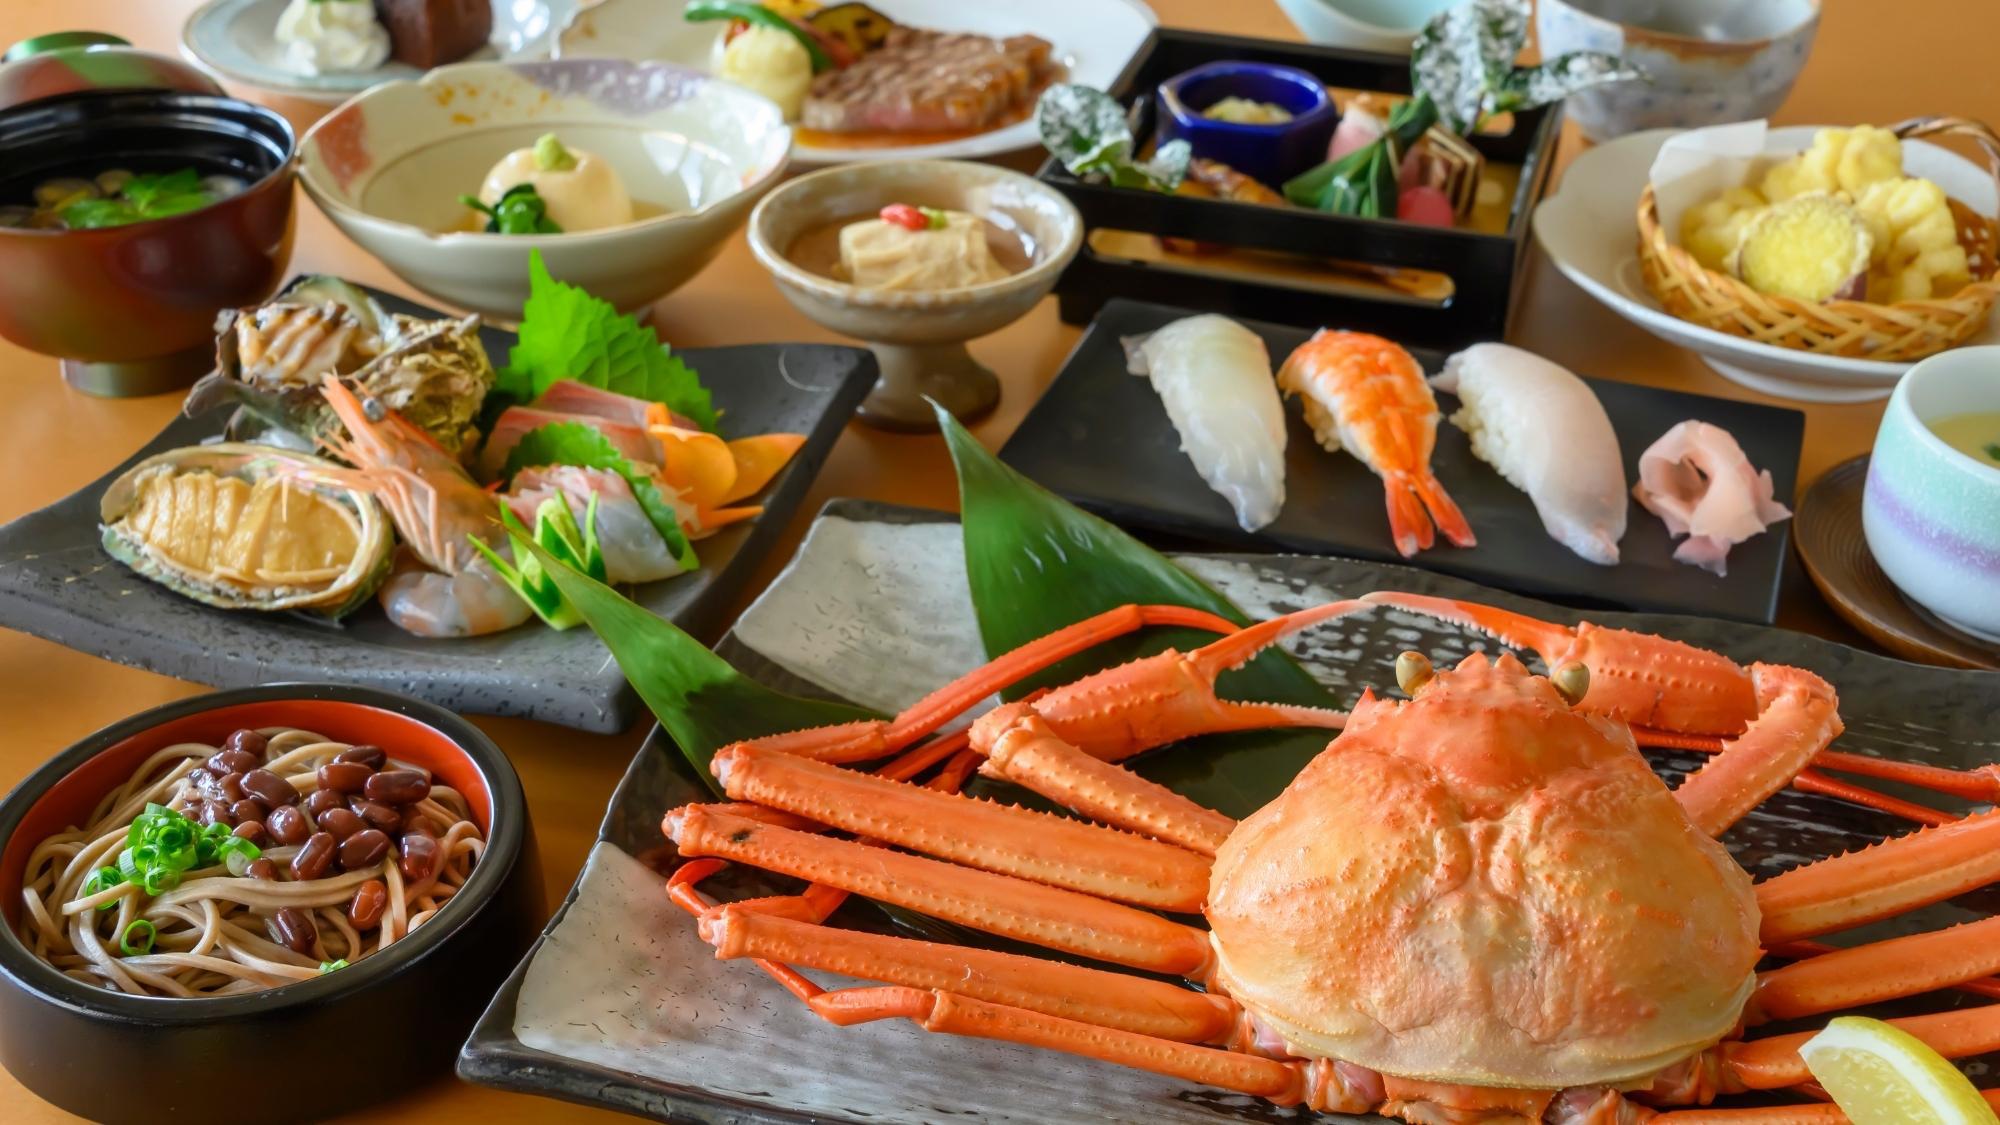 鳥取・境港産「紅ずわい蟹」濃厚な蟹味噌とジューシーな身を一緒に口に含めば至福の味わいです。